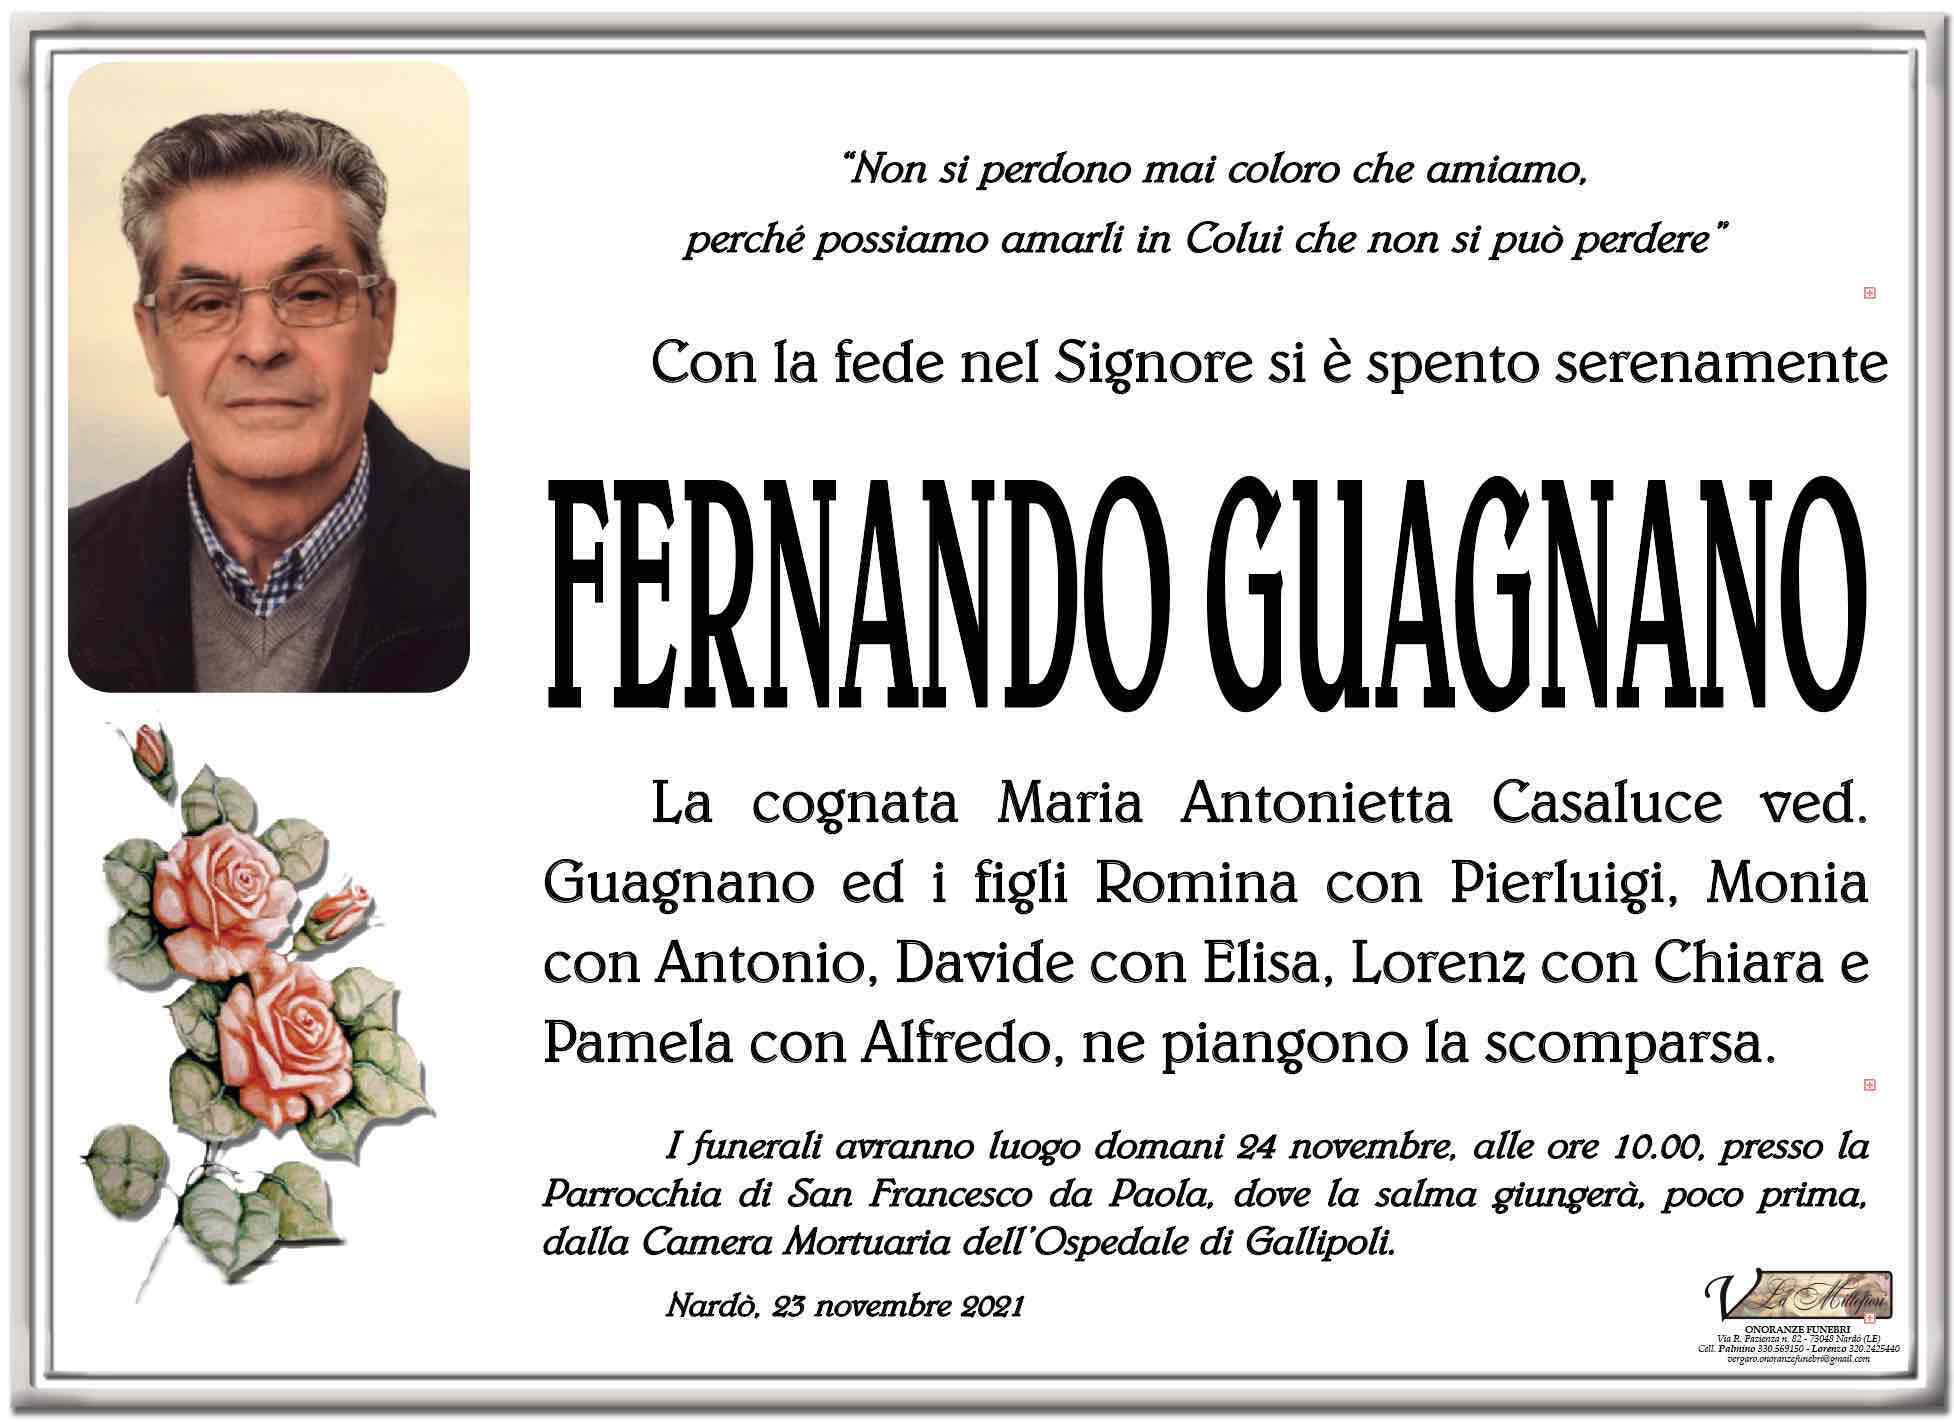 Fernando Guagnano